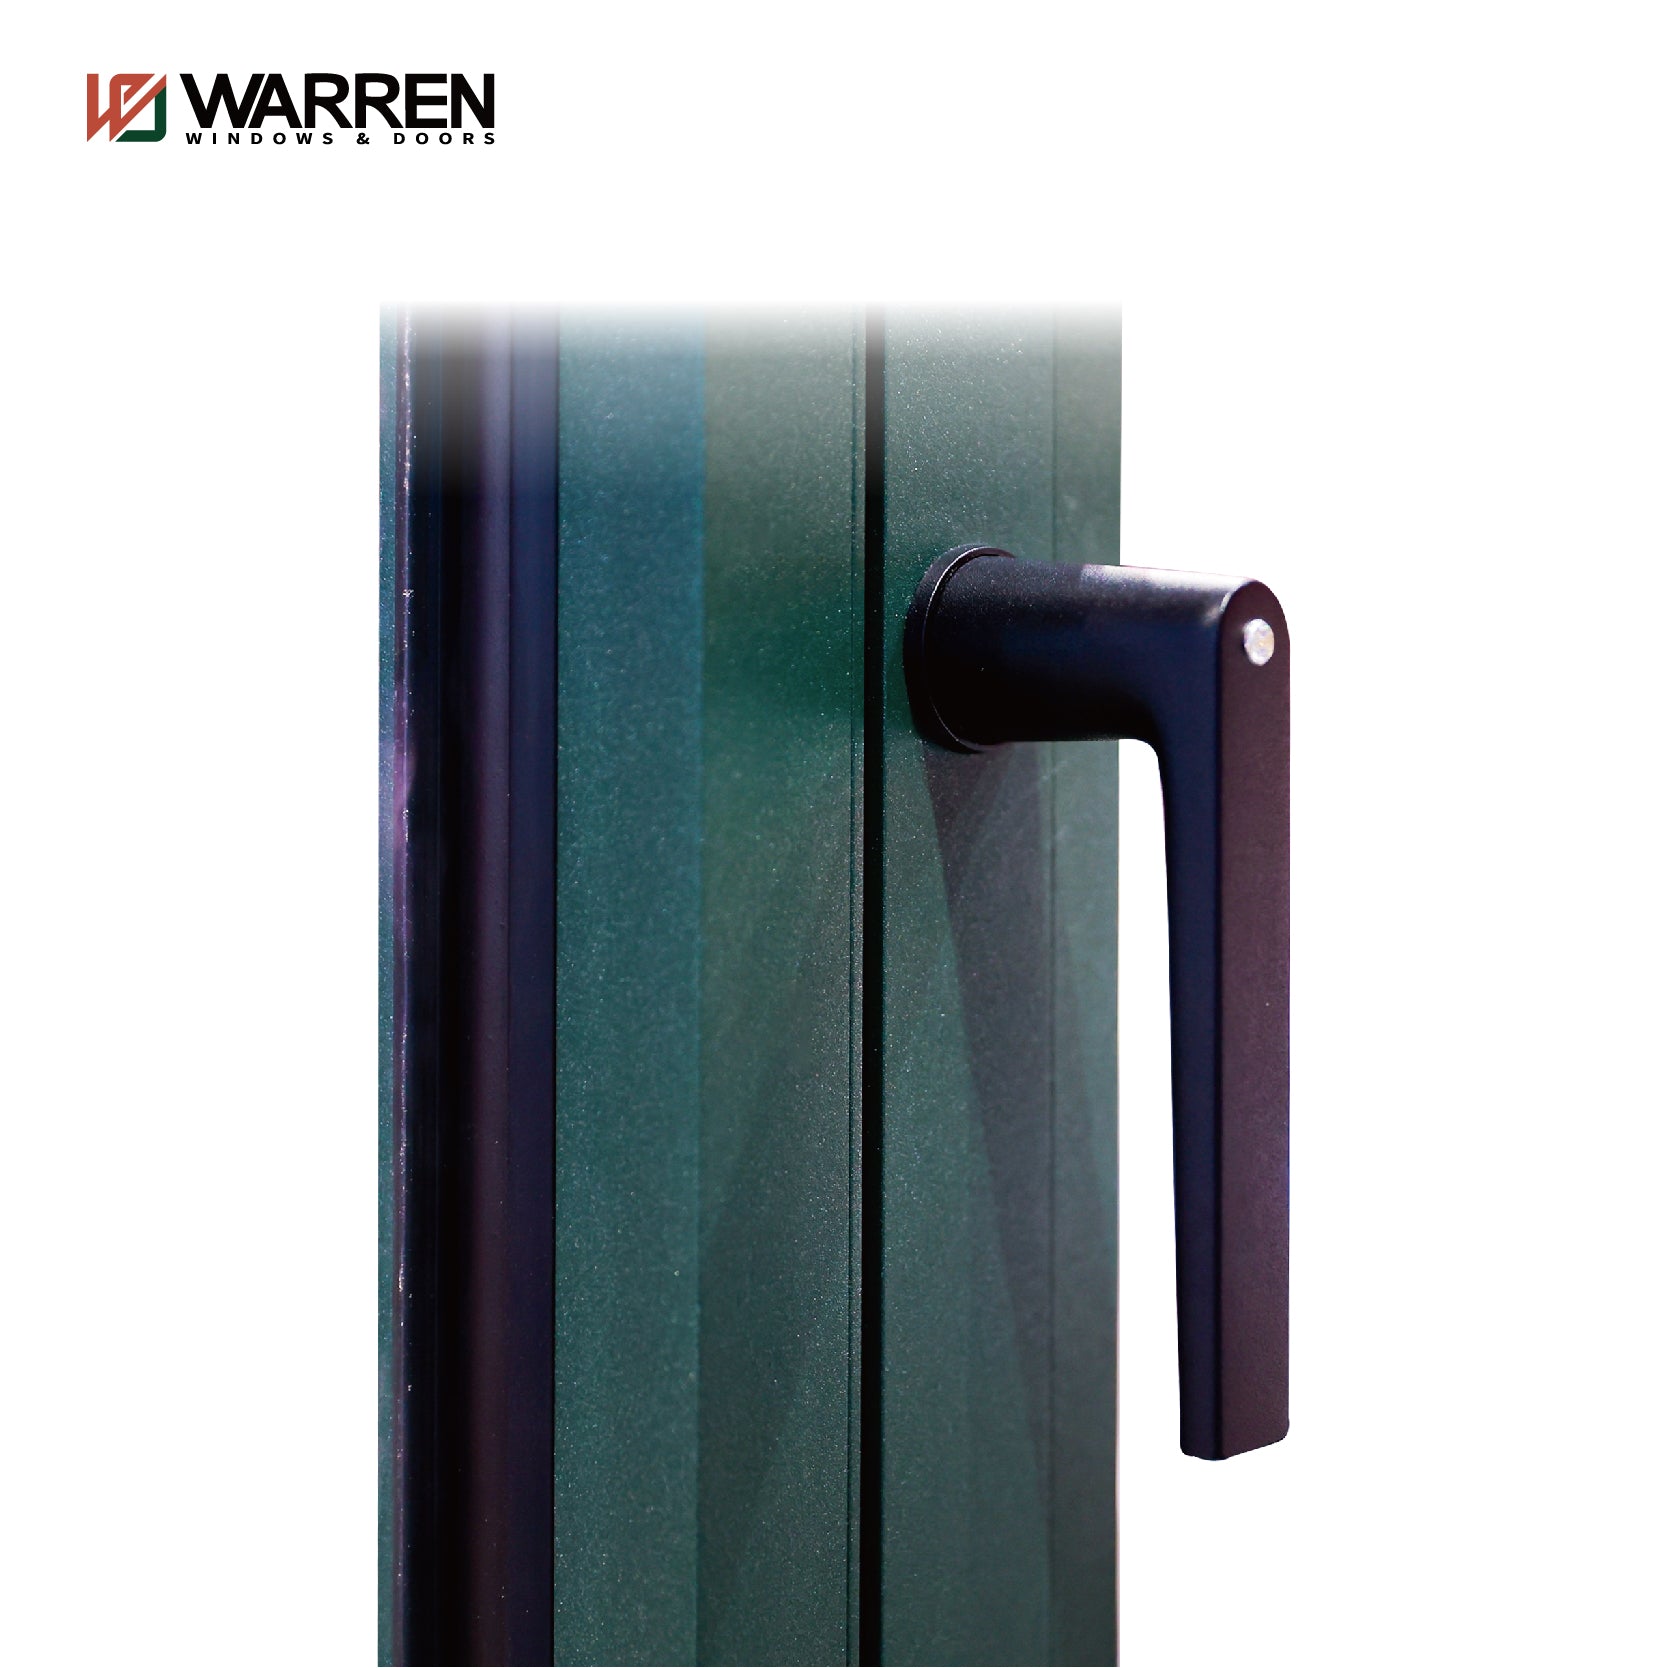 Warren New Design Good Quality Aluminum Door And Window System  Double Glass Window